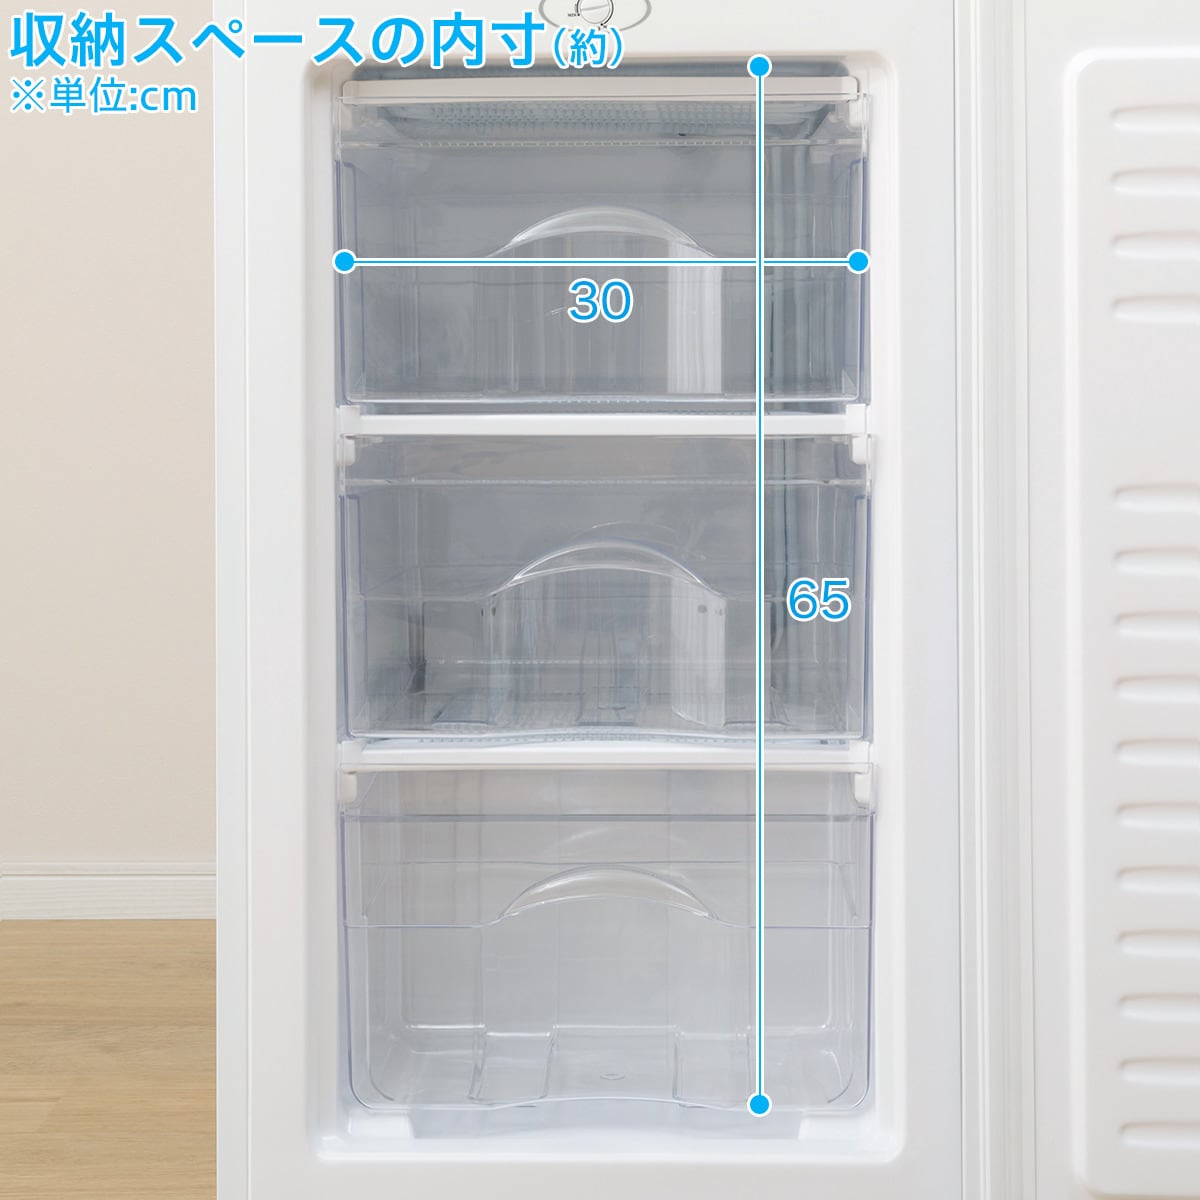 60L 1ドア冷凍庫(NTR60)通販 ニトリネット【公式】 家具・インテリア通販